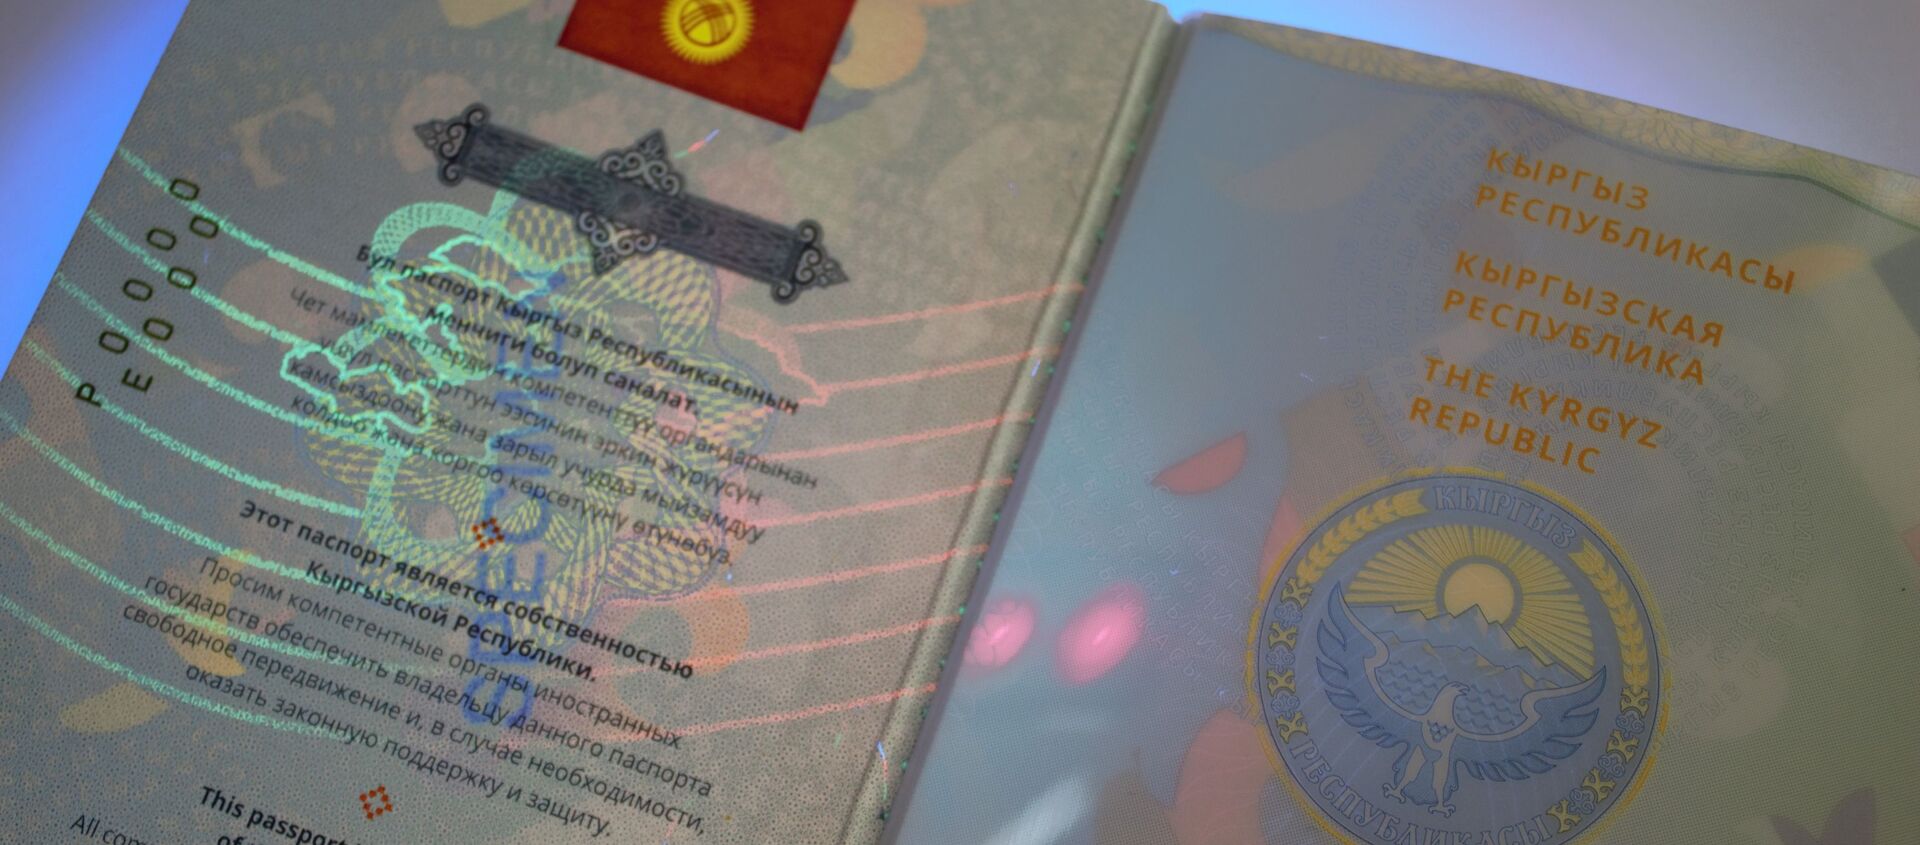 Жаңы үлгүдөгү жалпы жарандык паспорт. Архив - Sputnik Кыргызстан, 1920, 15.06.2021